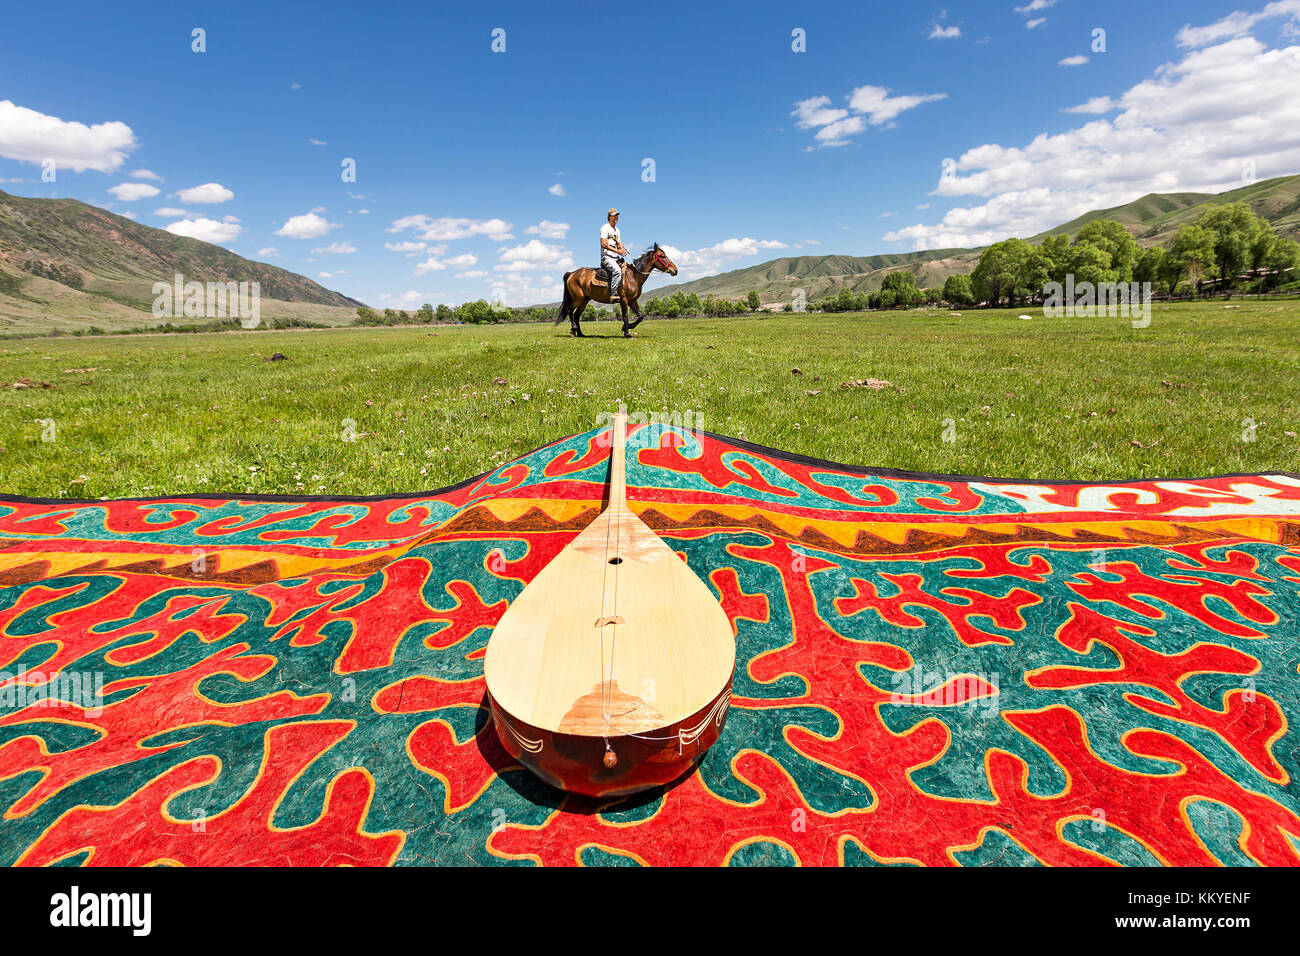 Kasachischen nationalen Musikinstrument als dombra und ein Pferd Reiter bekannt, im Dorf bleiben, Kasachstan. Stockfoto